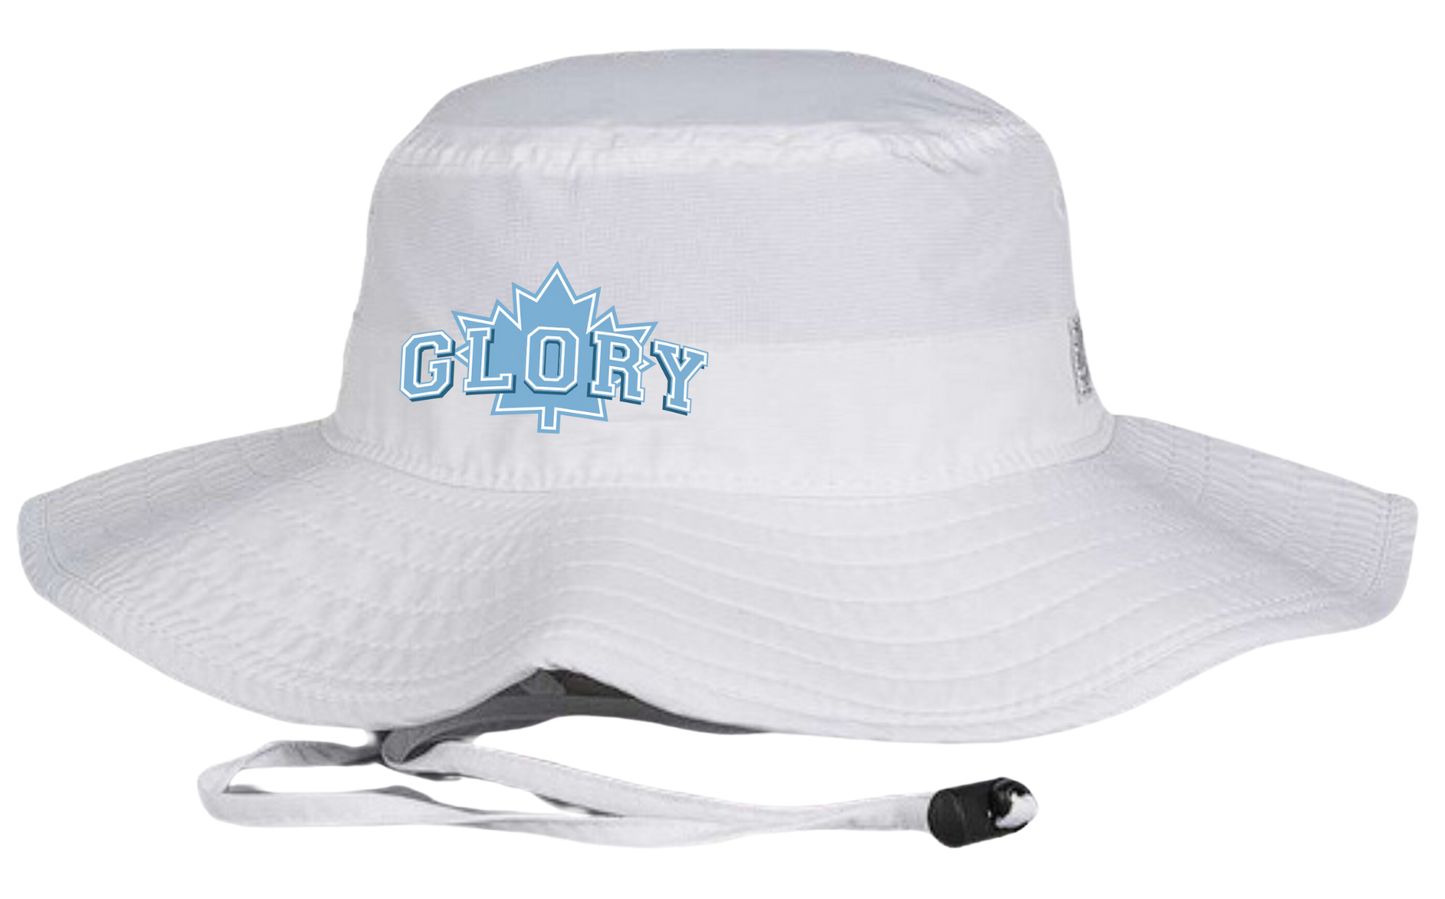 Glory Softball Boonie Hat